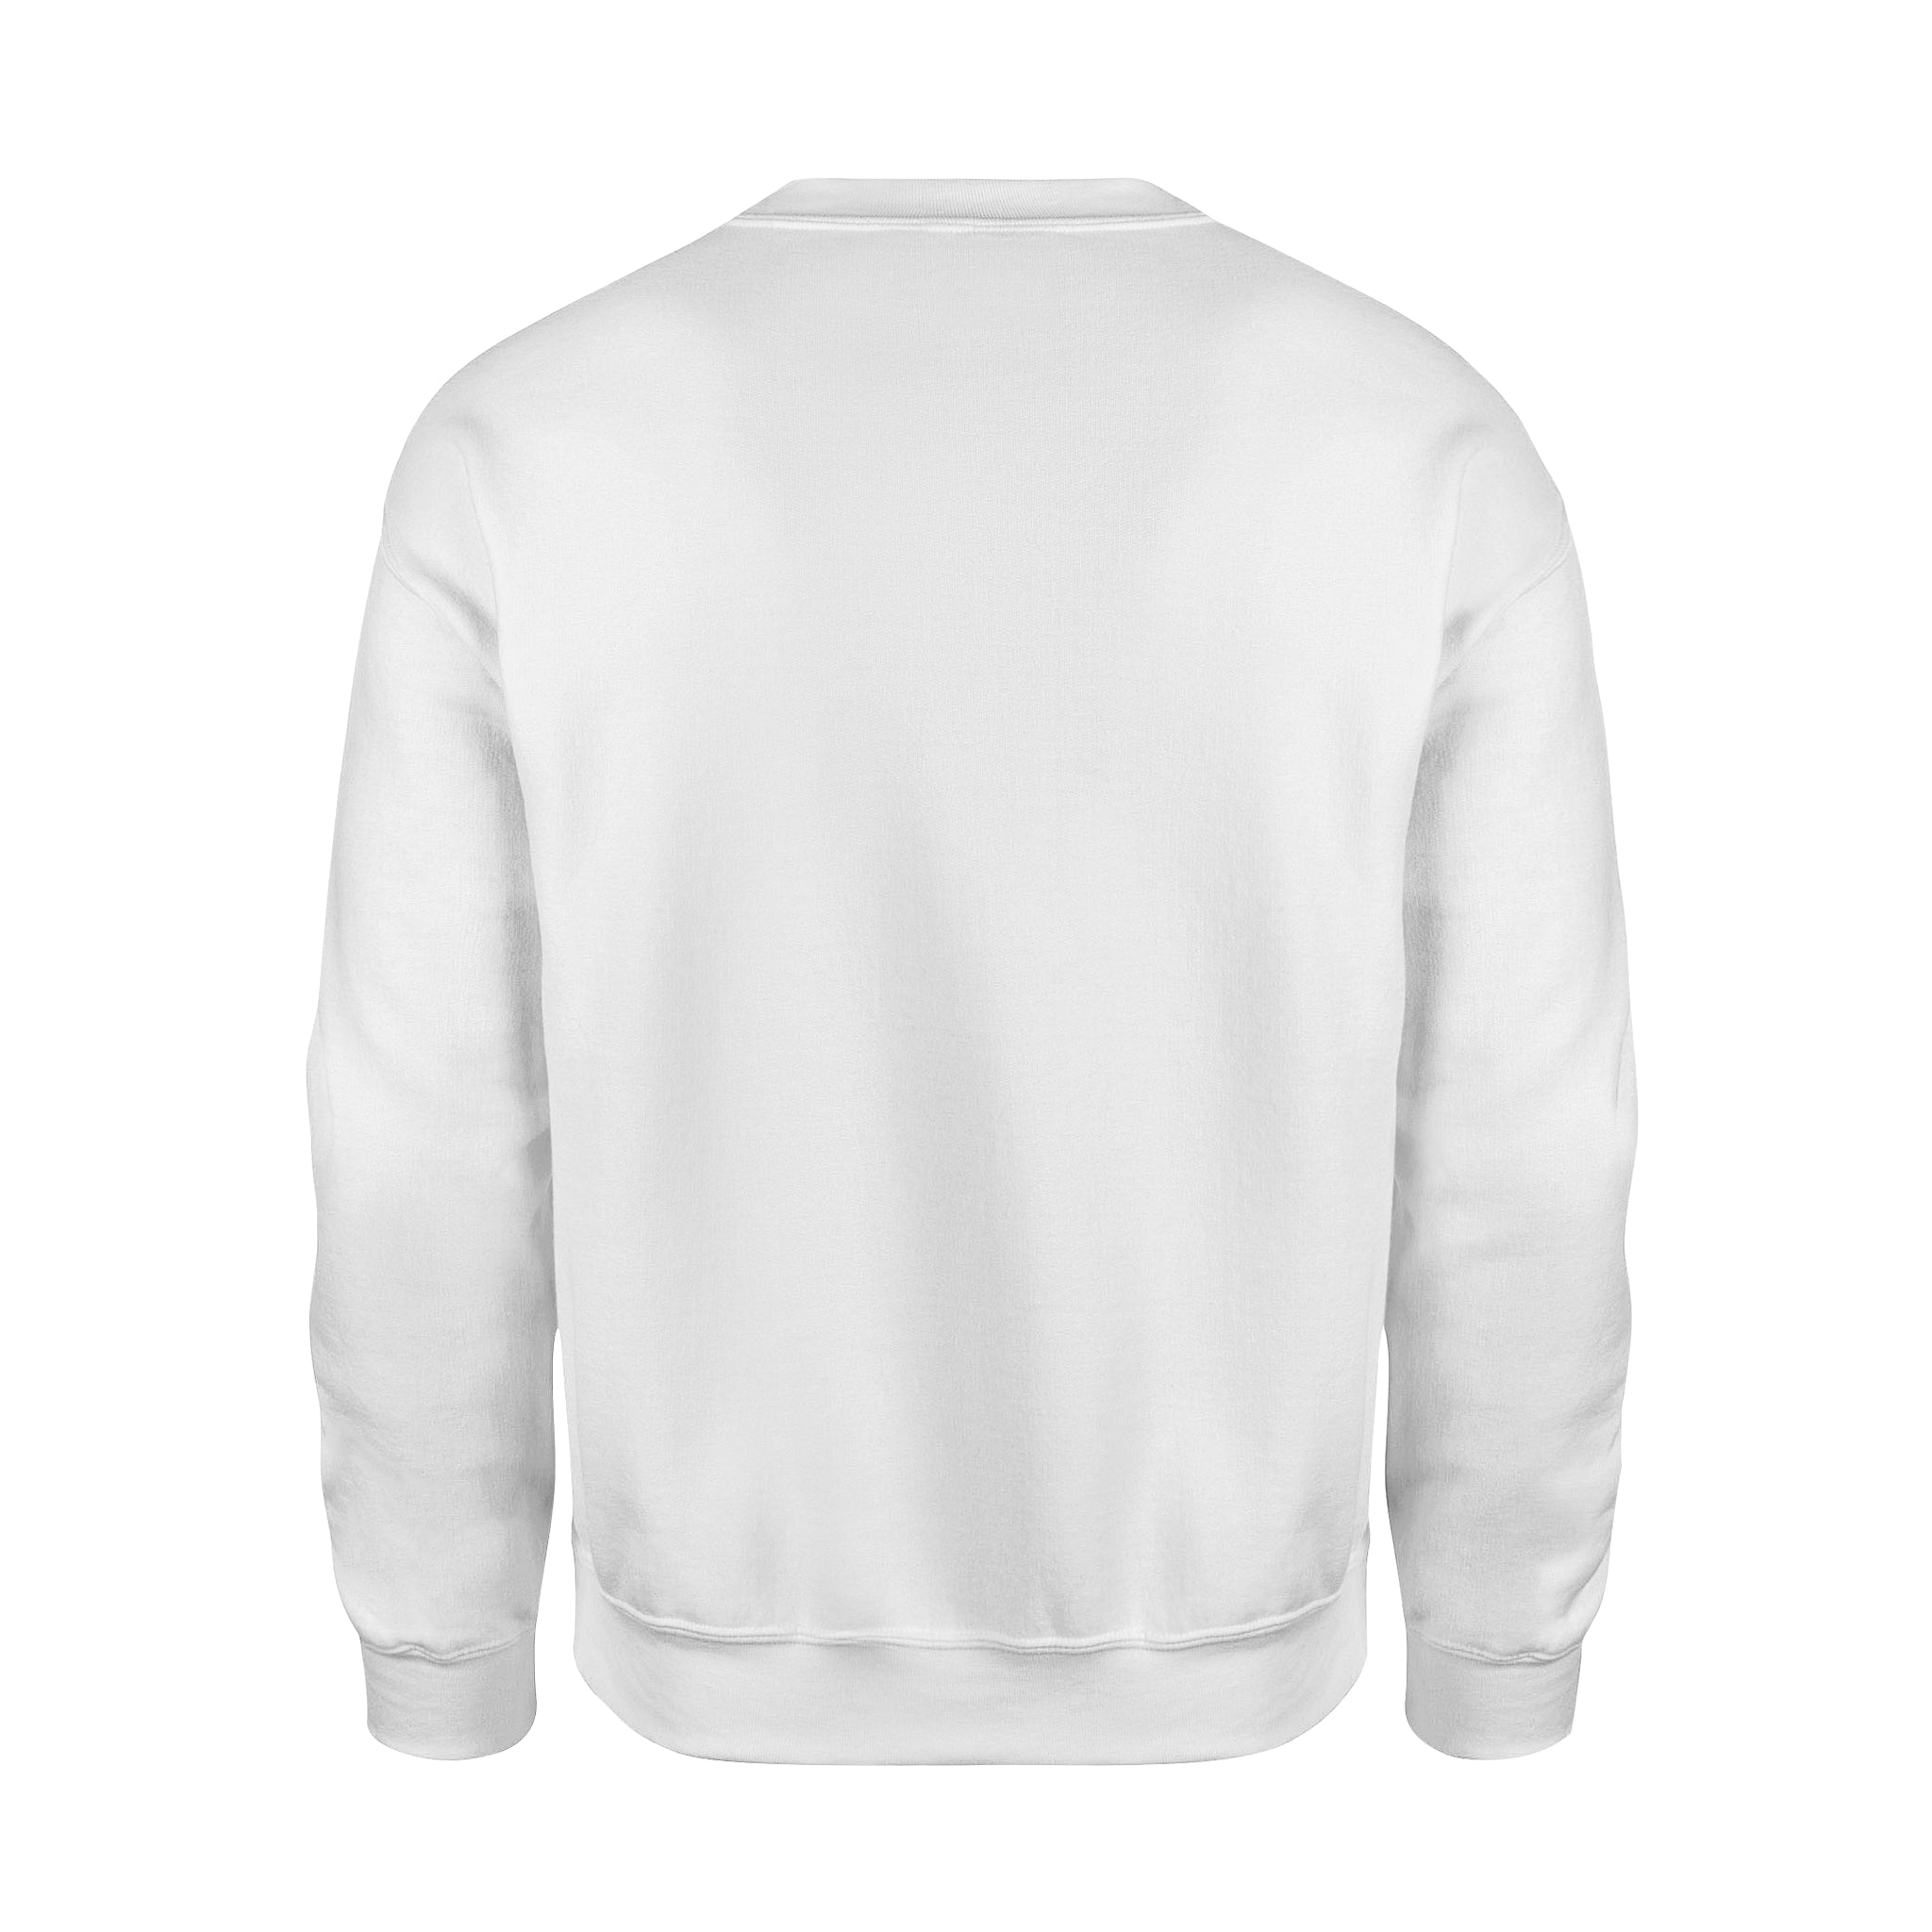 Kindness -  Fleece Sweatshirt